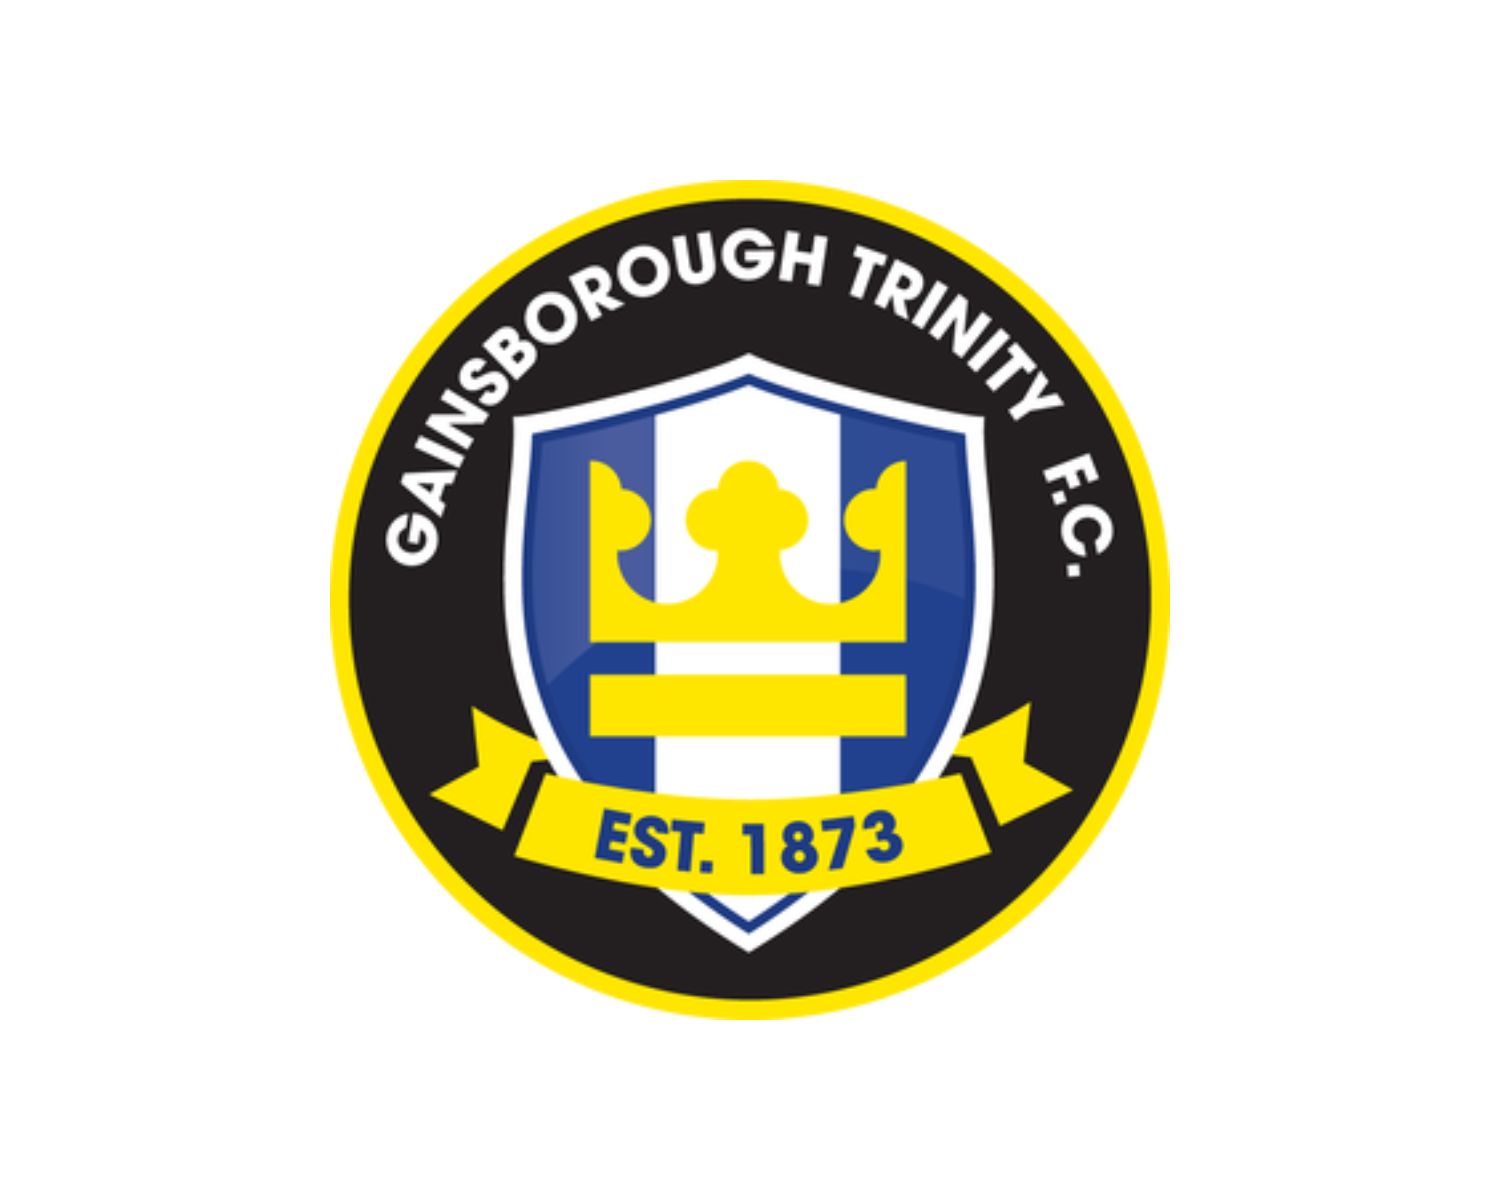 gainsborough-trinity-fc-16-football-club-facts